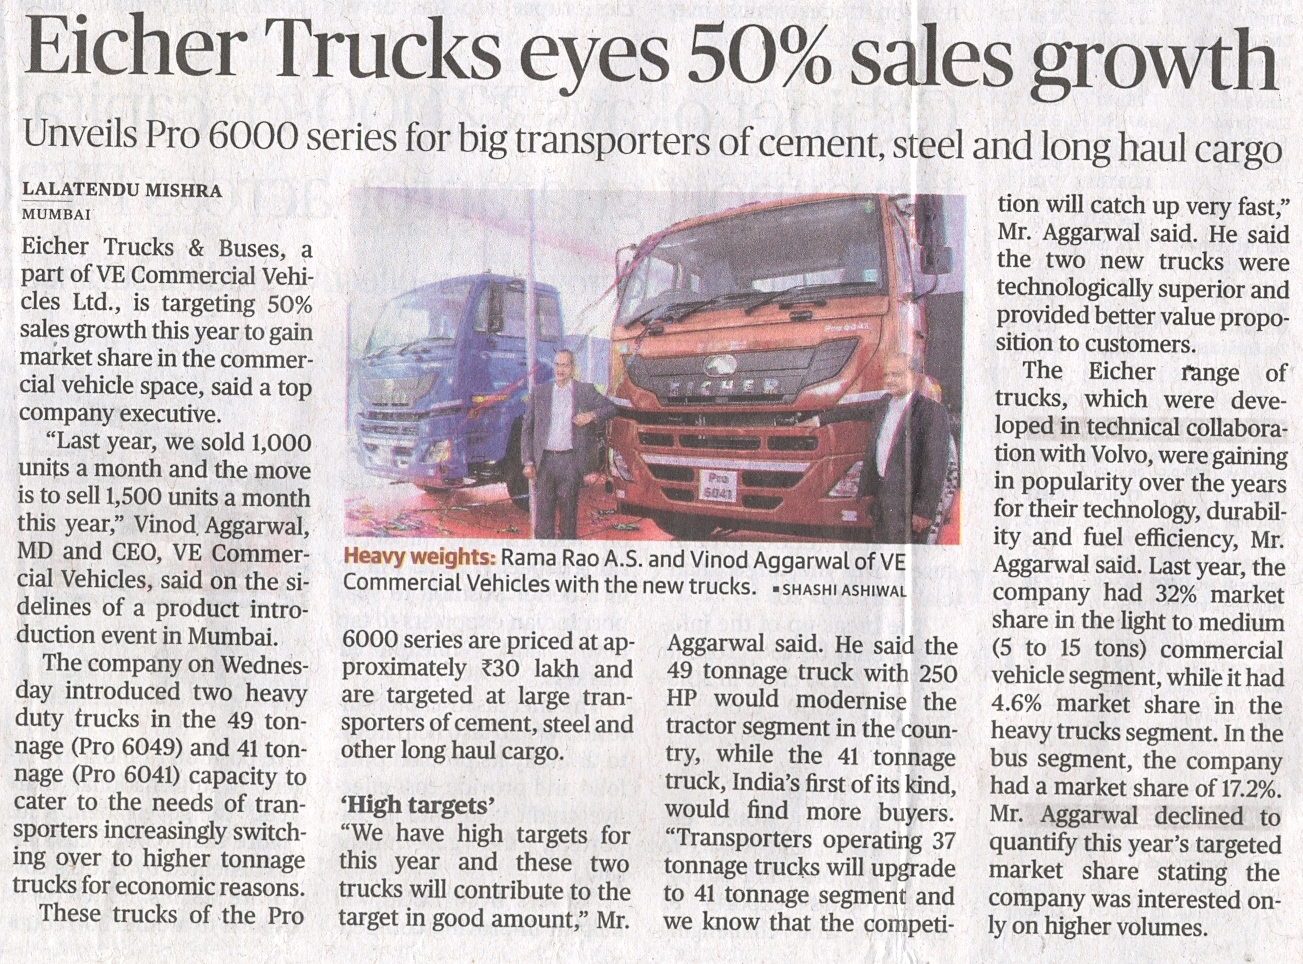 Eicher trucks eyes 50% sales growth